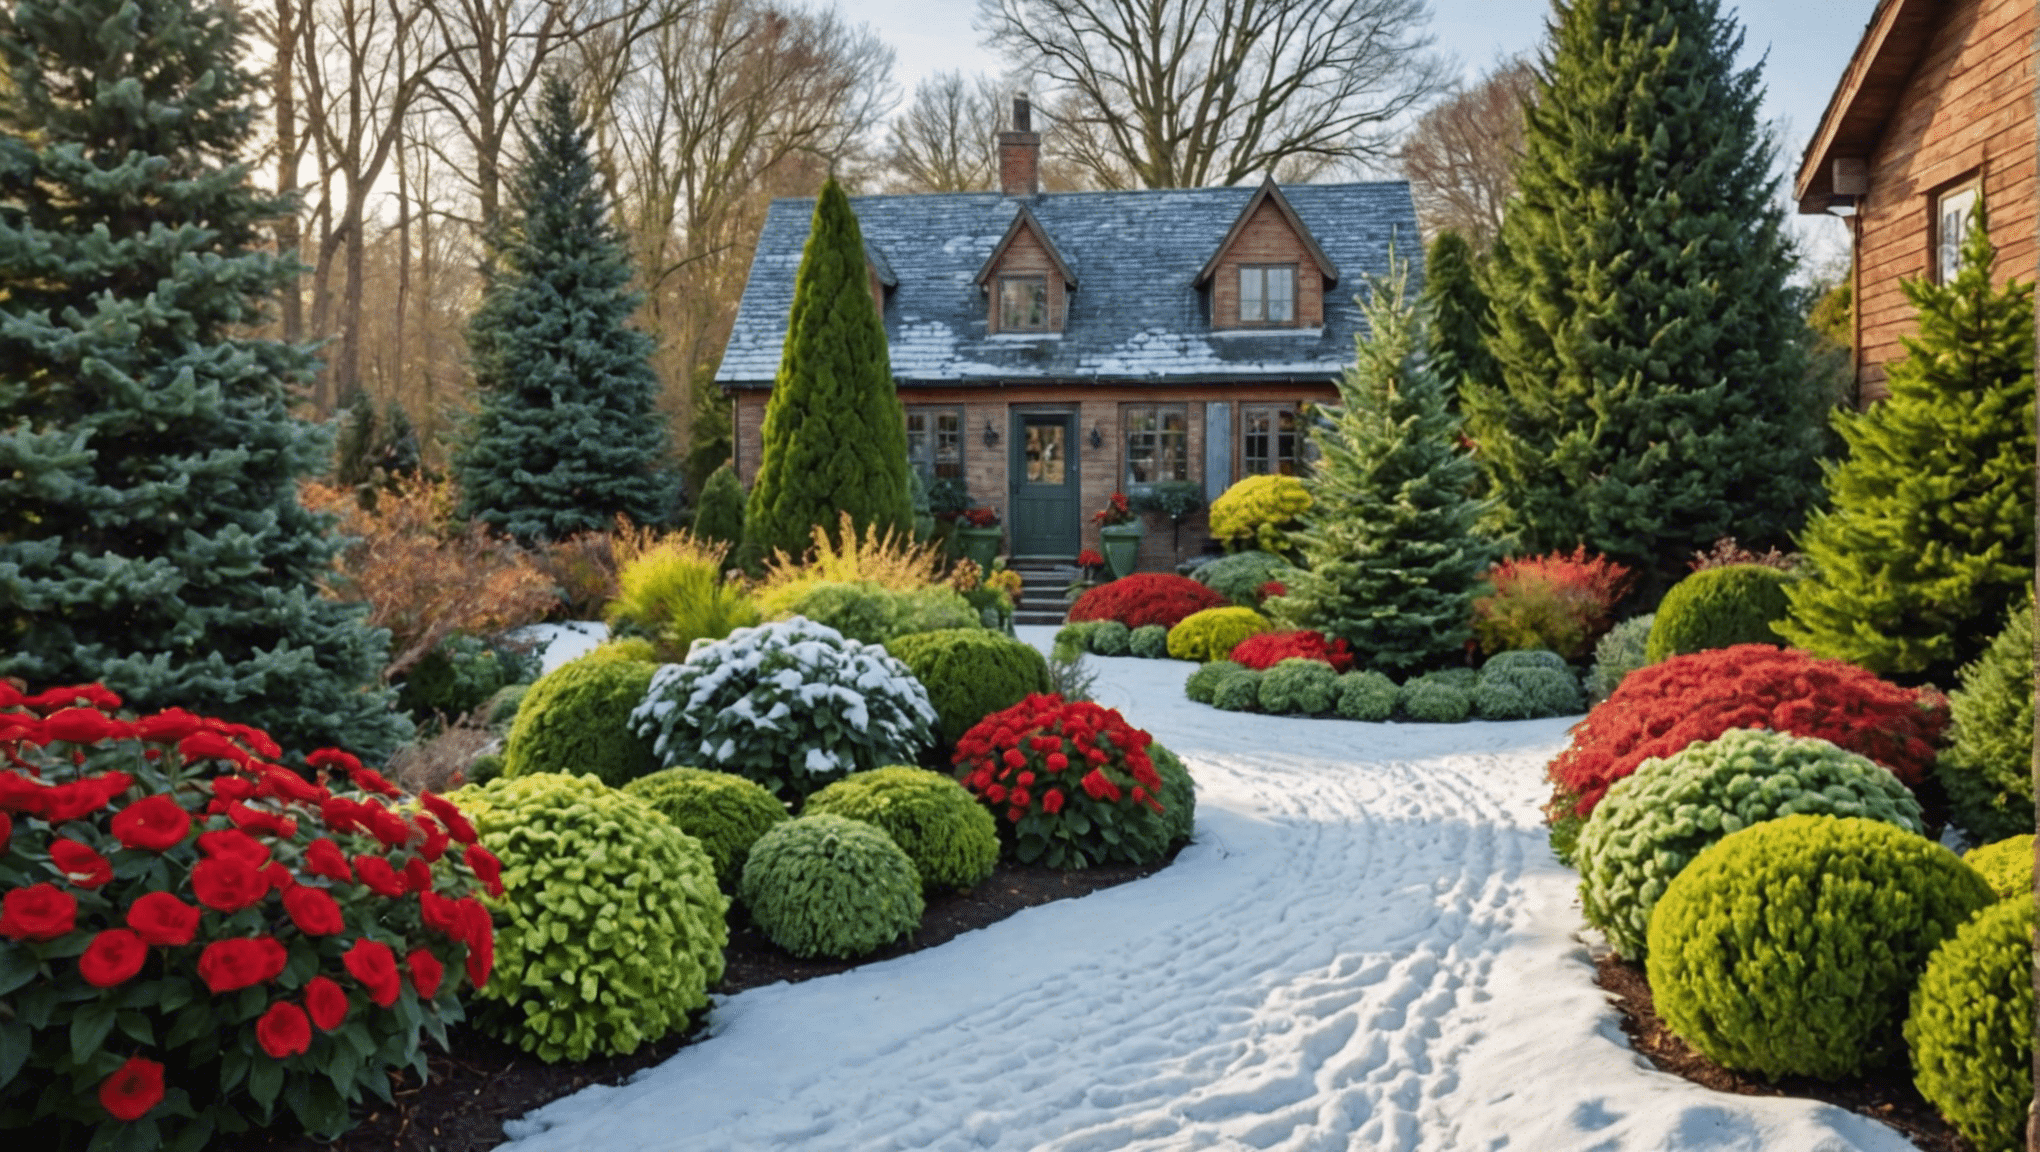 prozkoumejte nejnovější nápady na zimní zahradničení, abyste si sezónu co nejlépe užili. objevte tipy, inspiraci a odborné rady pro vaši zimní zahradu.